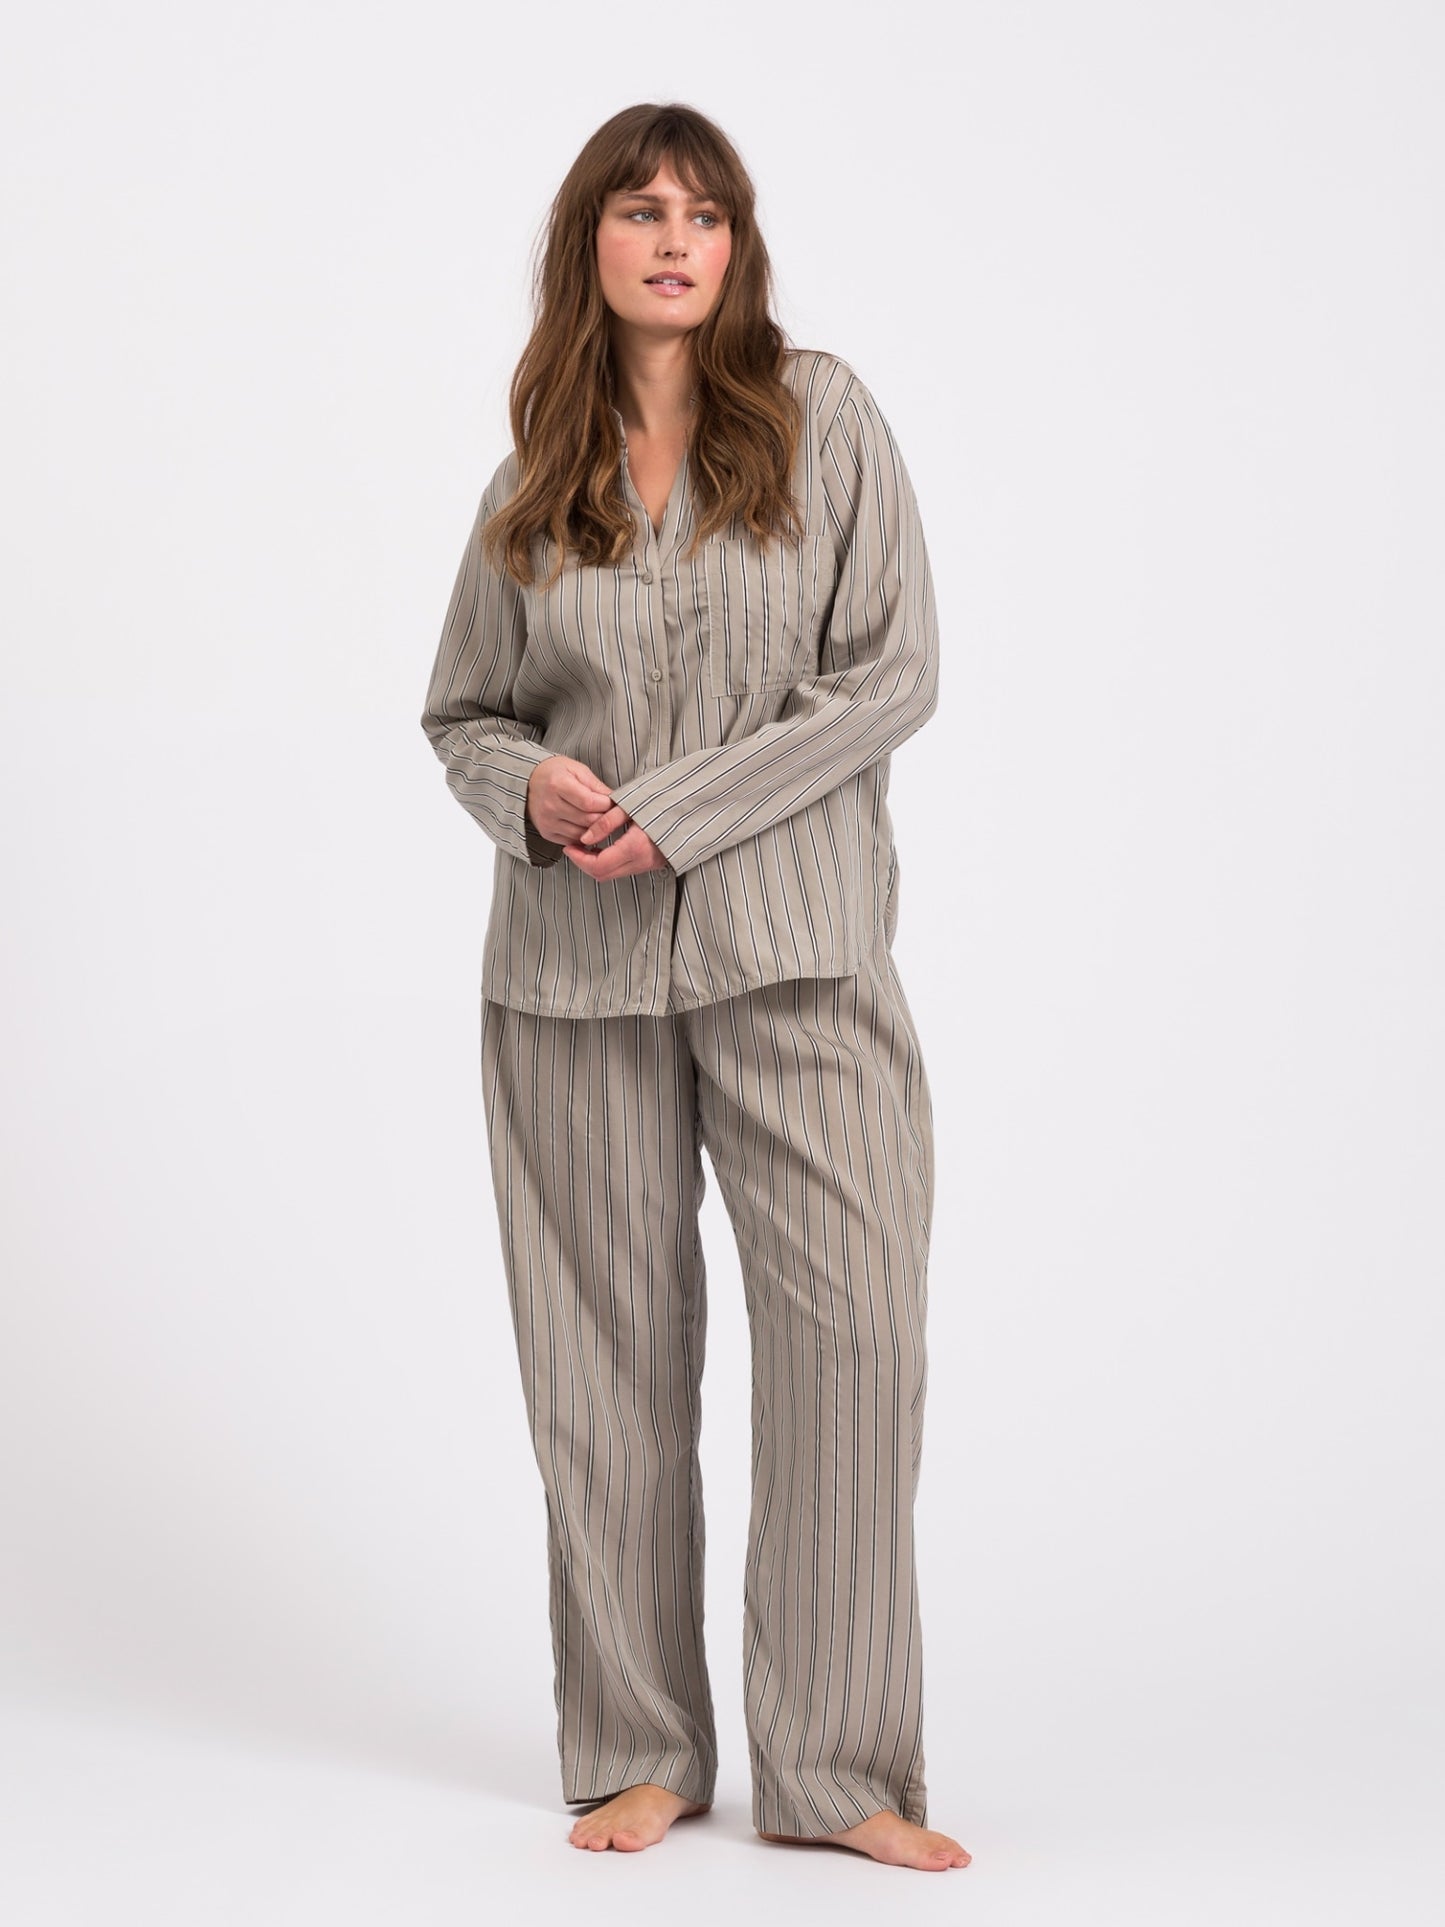 Sleep pajama pants - dust mint stripe